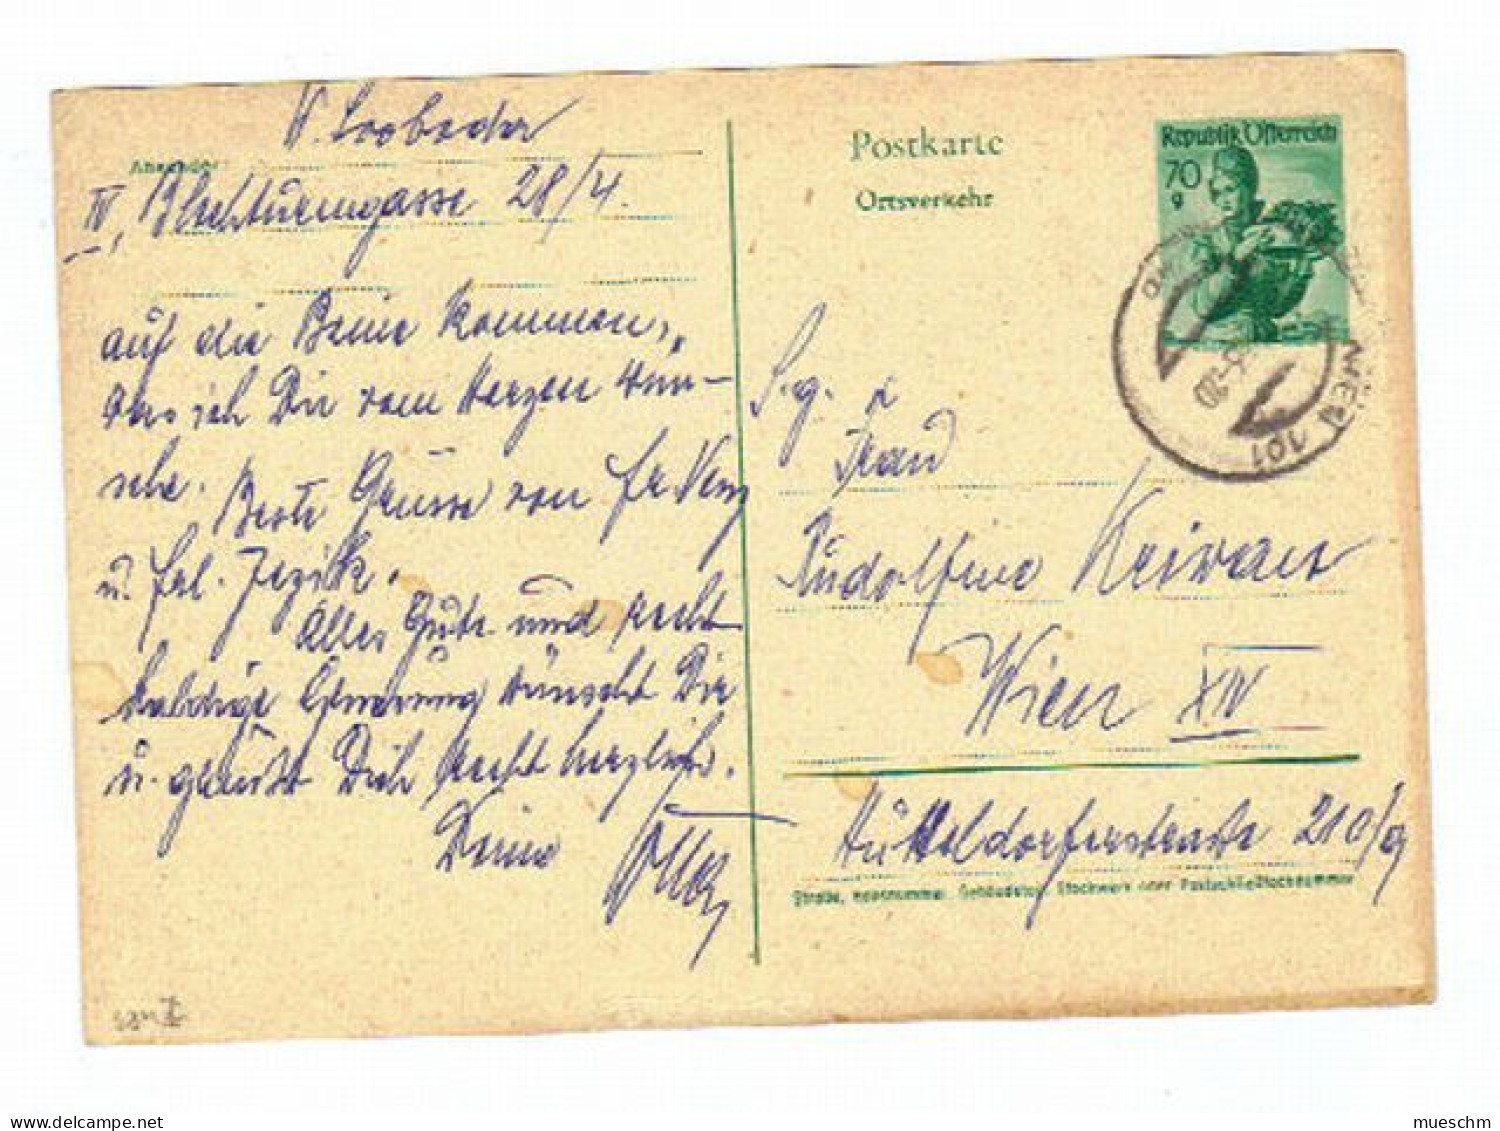 Österreich, 1963, Postkarte "Ortsverkehr" M. Eingedr. Frankatur 70g (10881W) - Postkarten